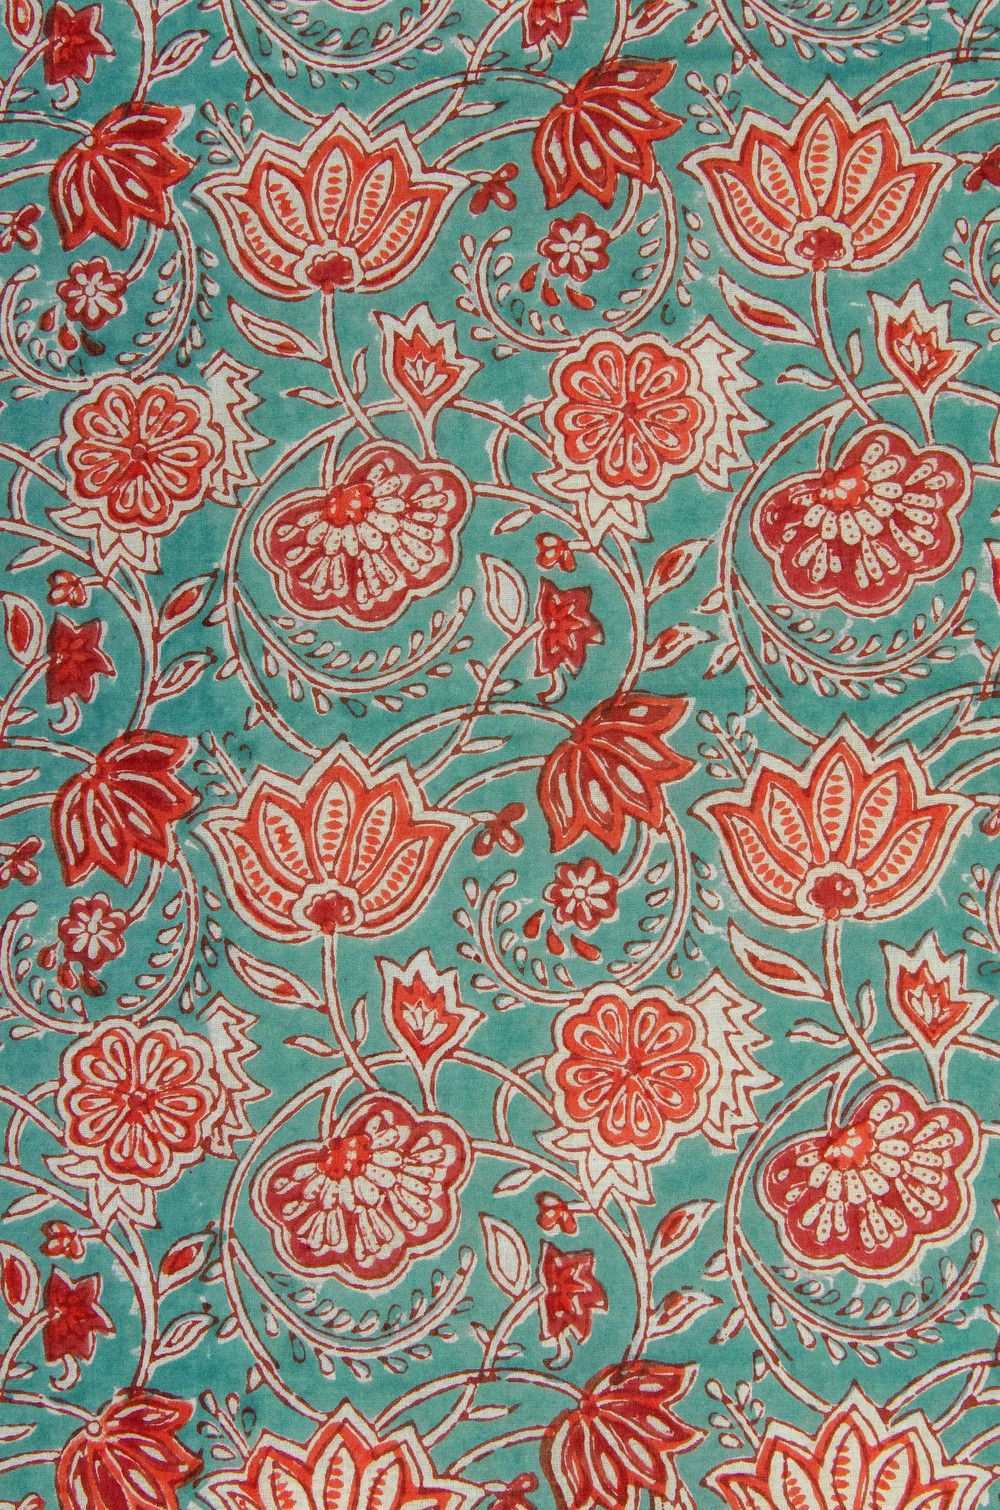 Stoff Blumen Blutenranken In Orange Weiss Blockprint Indien Ein Designerstuck Von Garnfaktur Bei Dawanda Stoffe Zum Nahen Stoff Muster